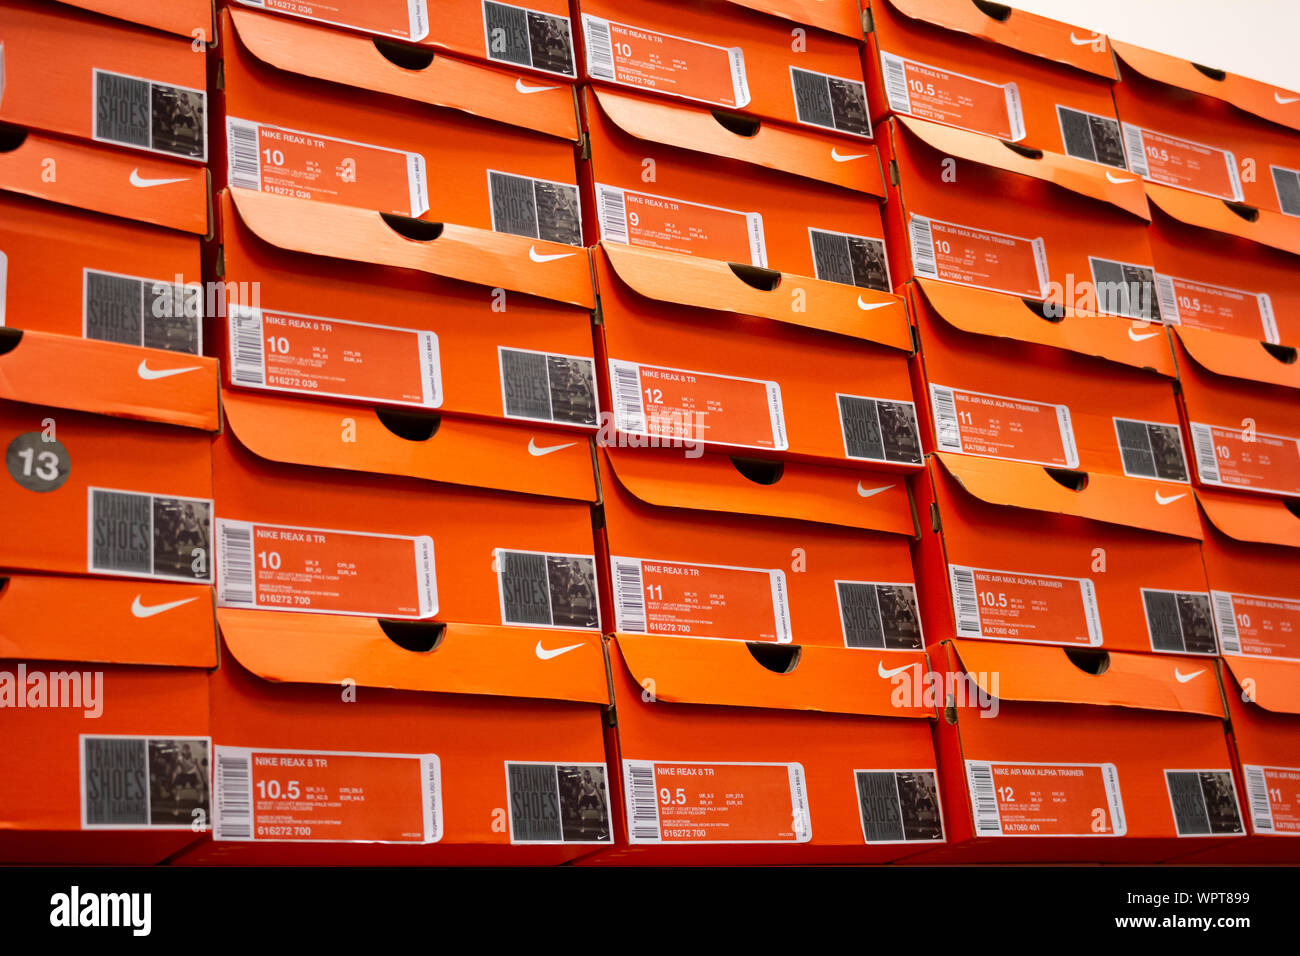 Los Angeles, Californie, États-Unis - 02-22-19: Une vue d'une grande pile de boîtes à chaussures Nike, exposées dans un magasin local. Banque D'Images